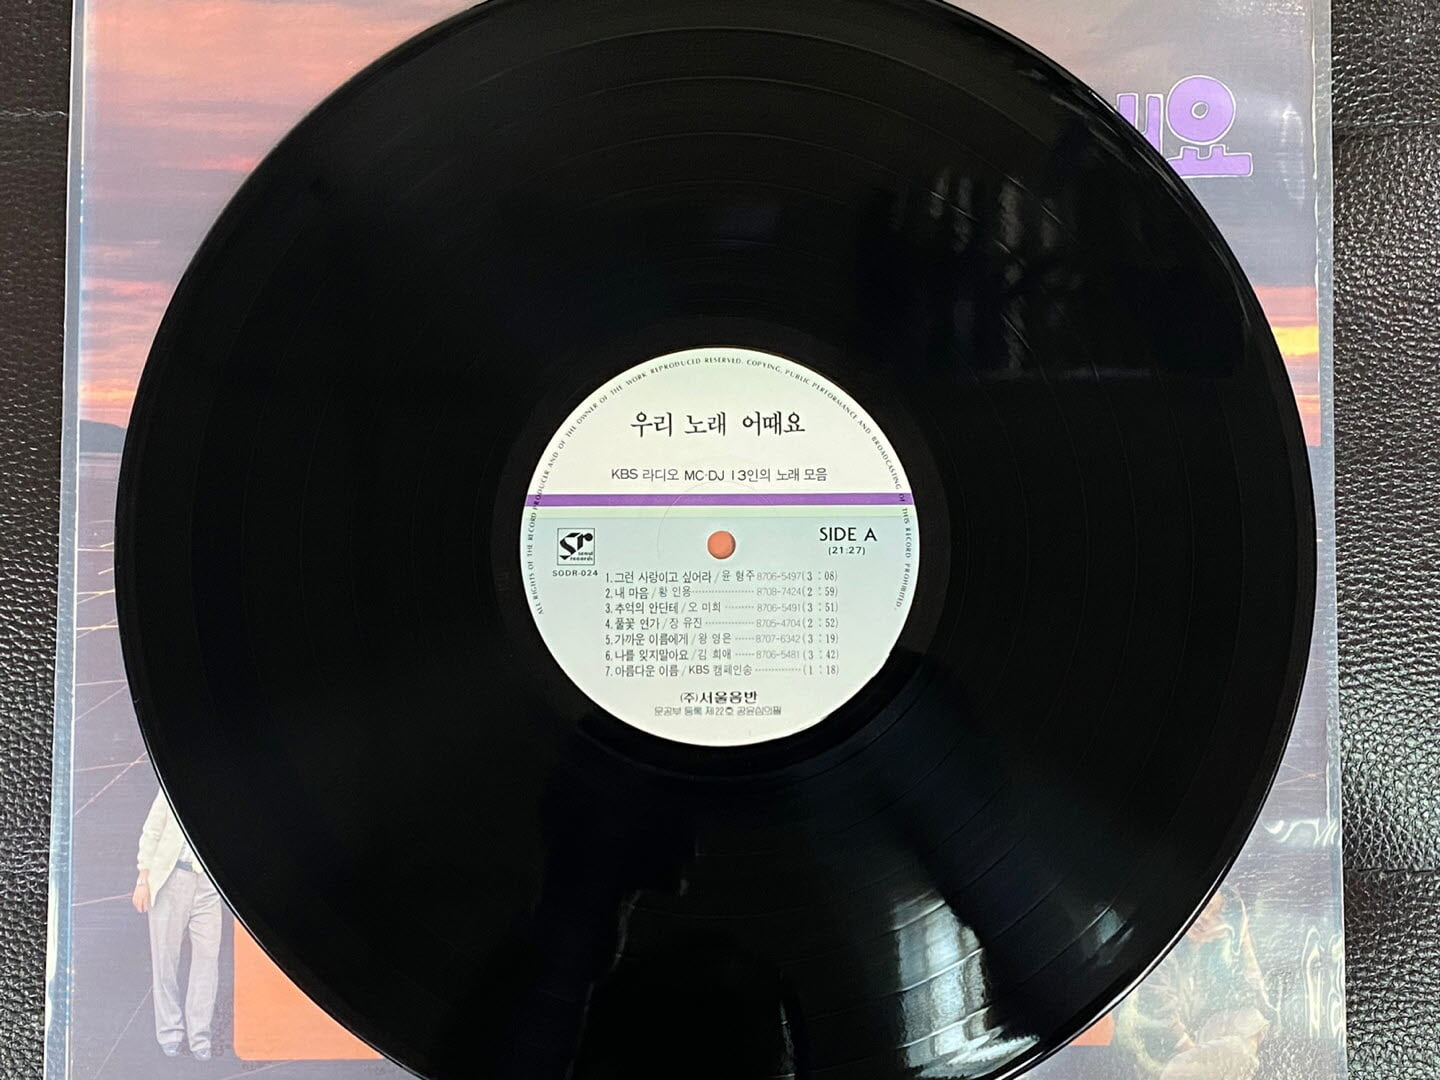 [LP] 김희애 (V.A) - KBS라디오 MC.DJ 13인의 노래모음 우리노래 어때요 LP [서울음반 SODR-024]